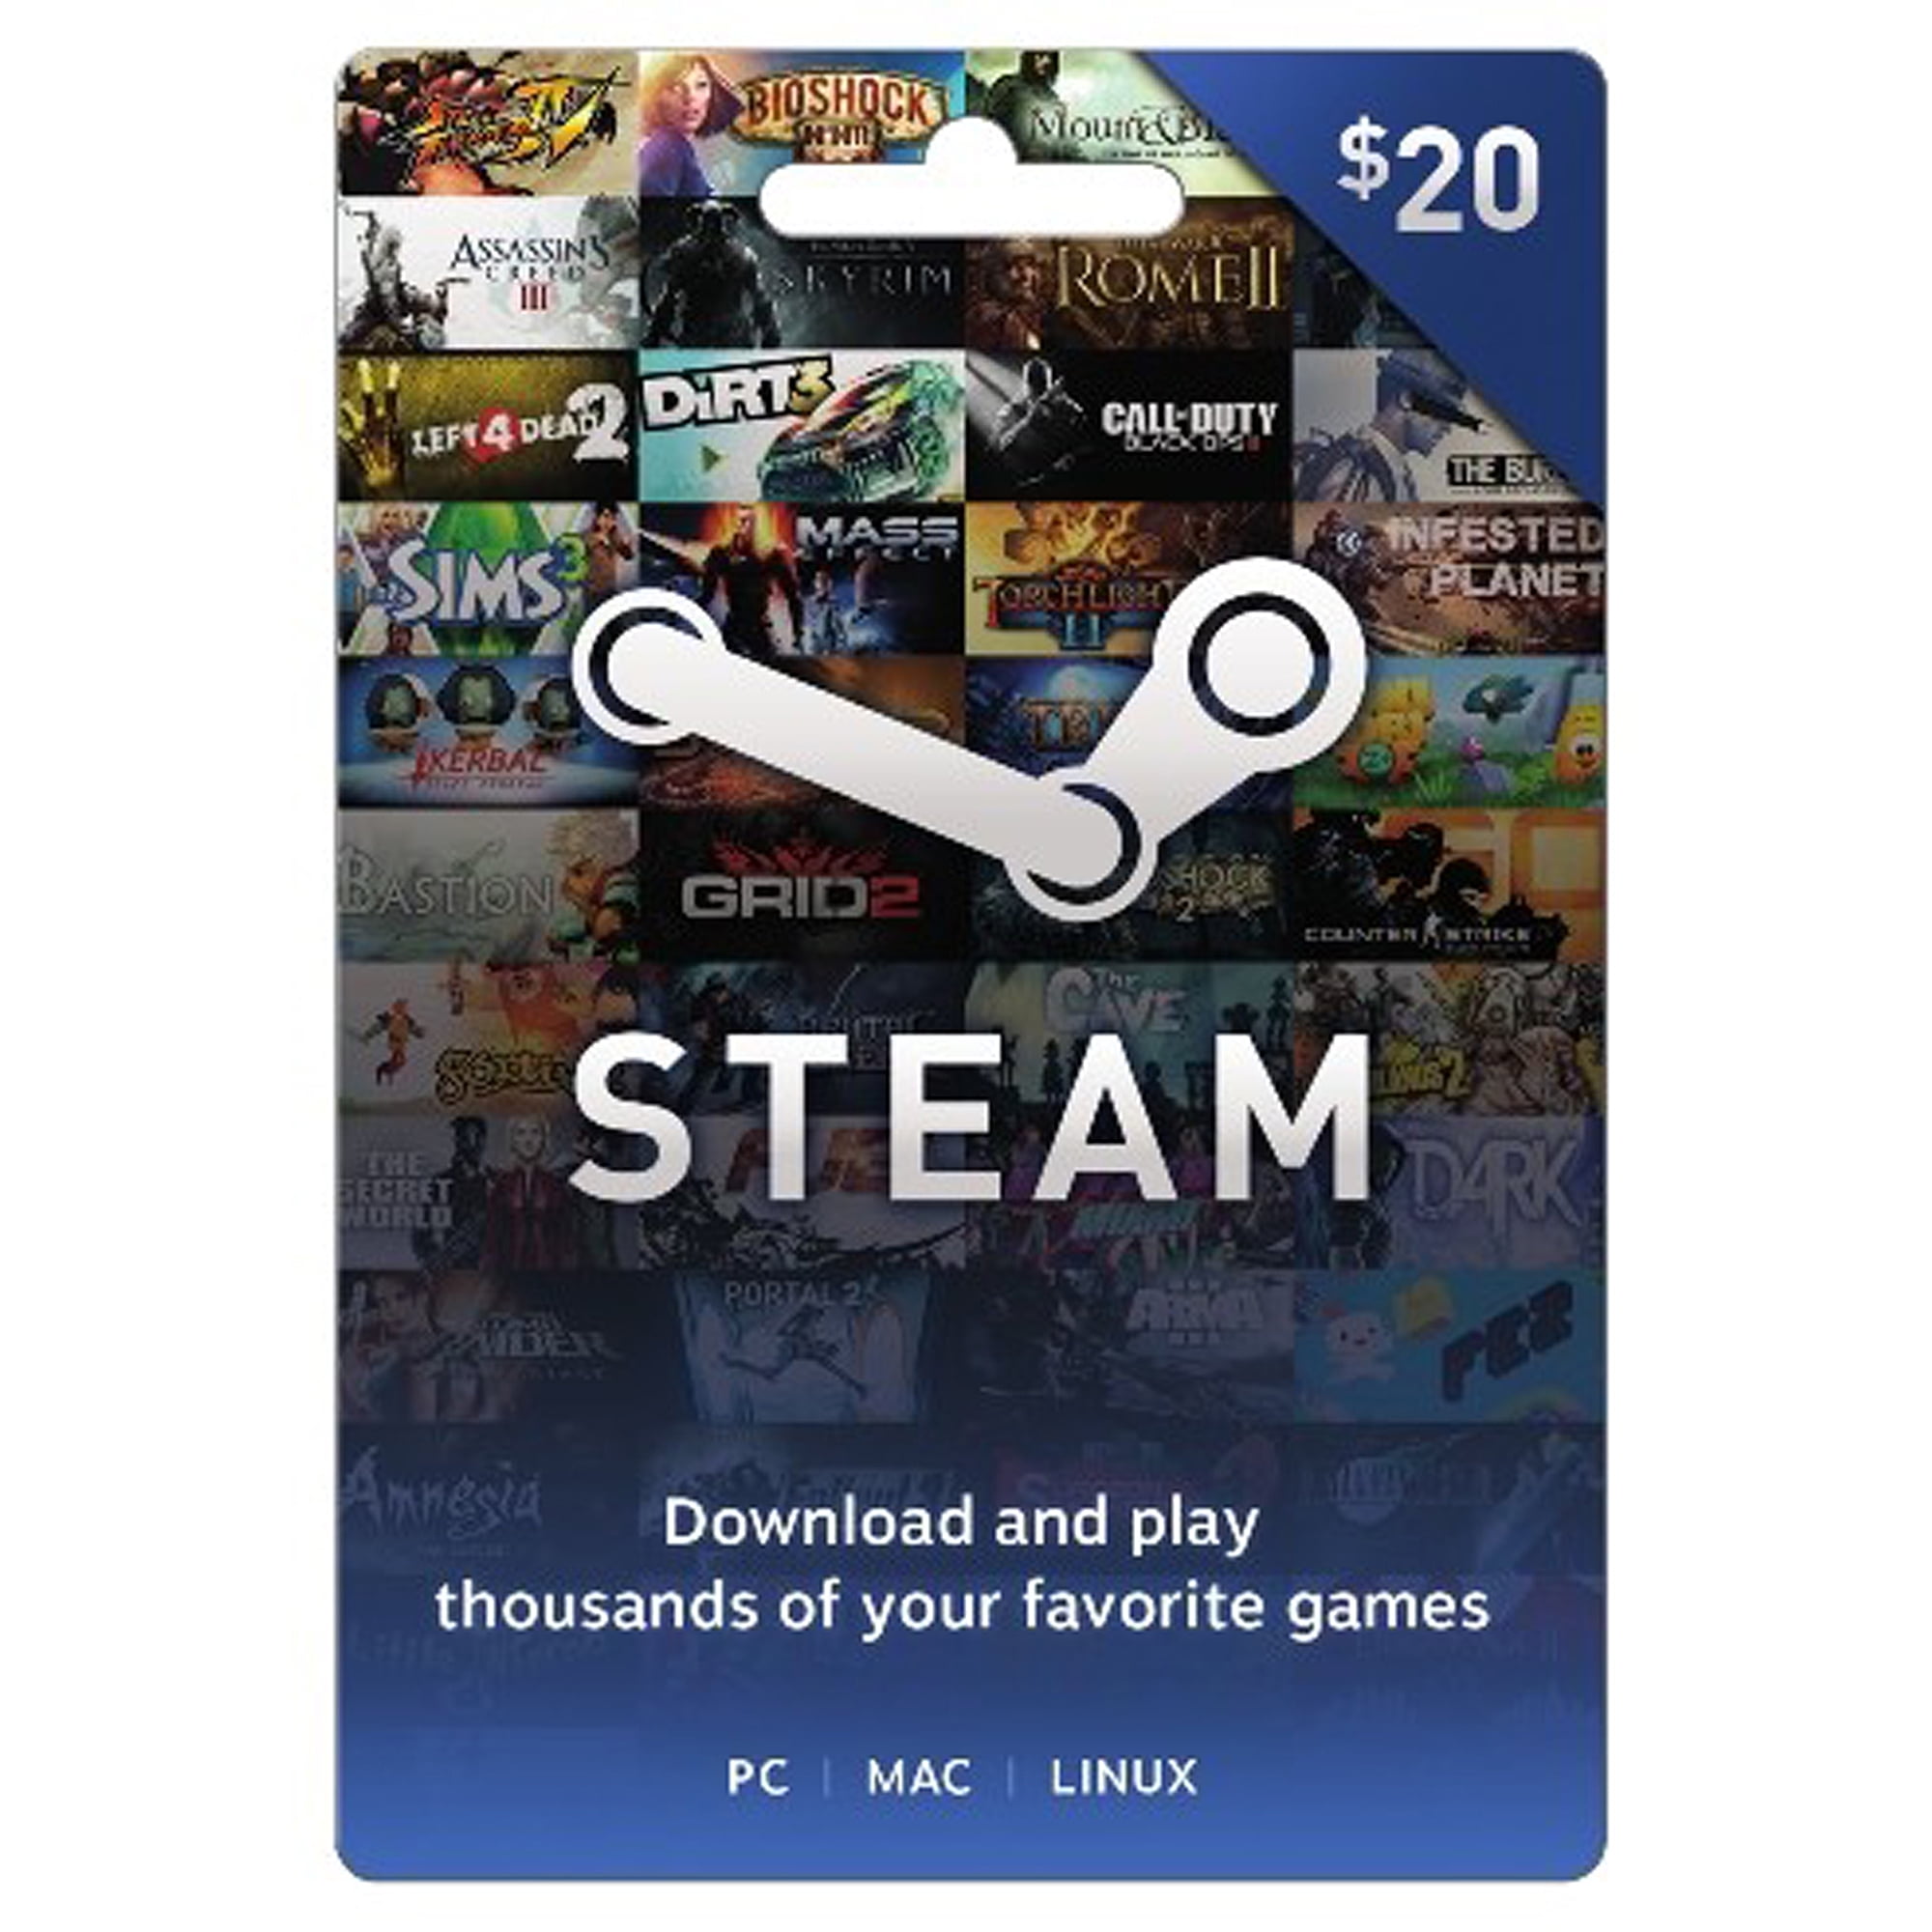 Valve Steam Wallet $20 Gift Card STEAM WARFRAME 2017 $20